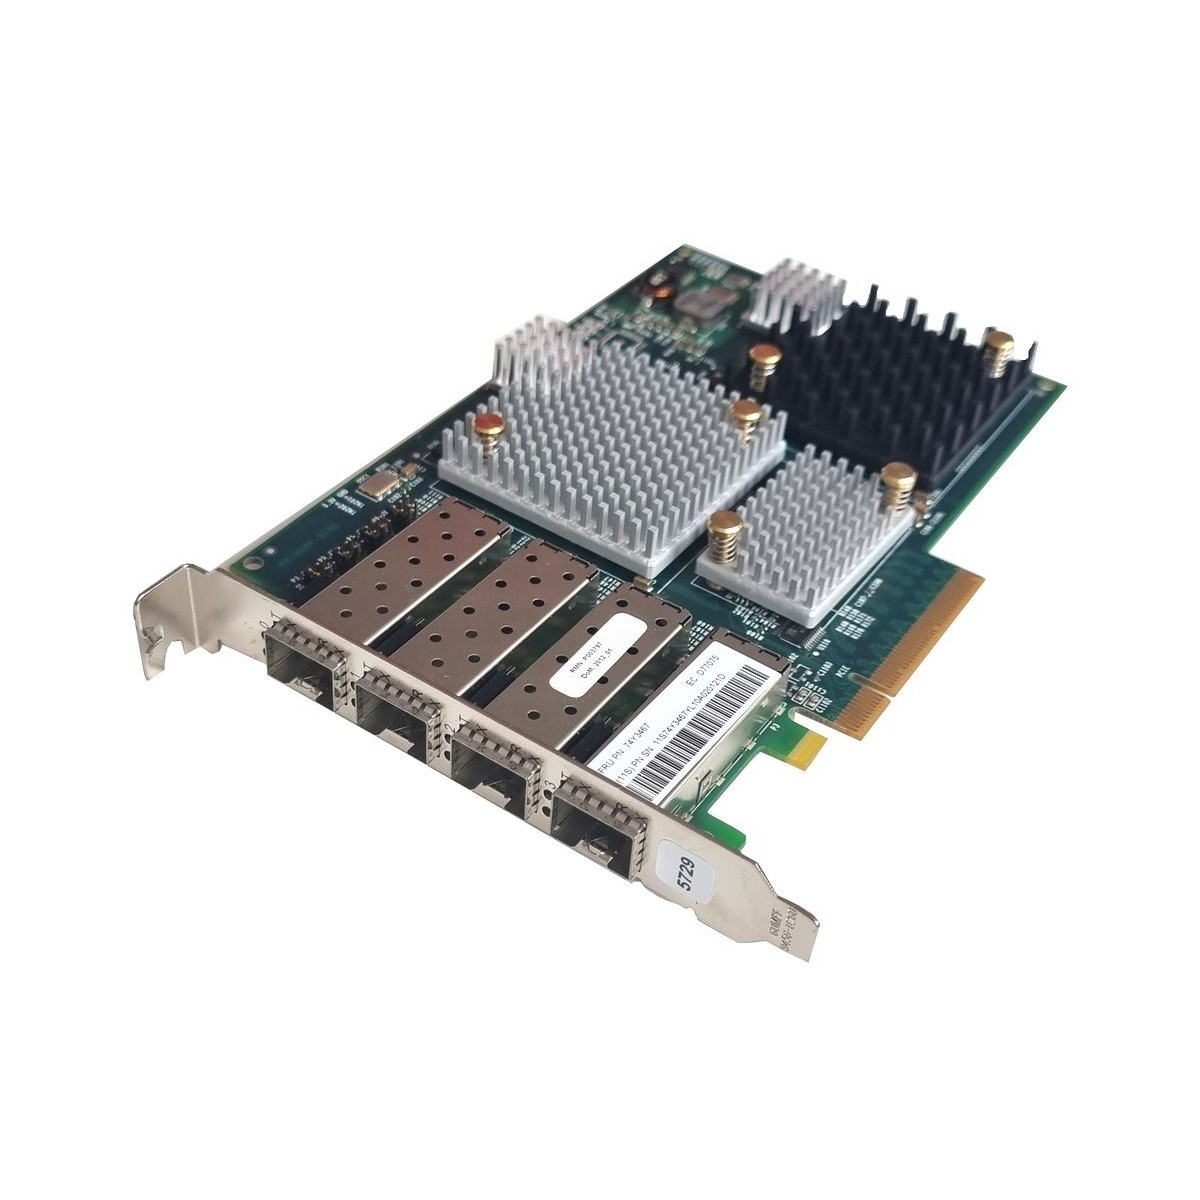 IBM EMULEX LPE12004 8GB 4-PORT PCIe 2.0 x8 74Y3467